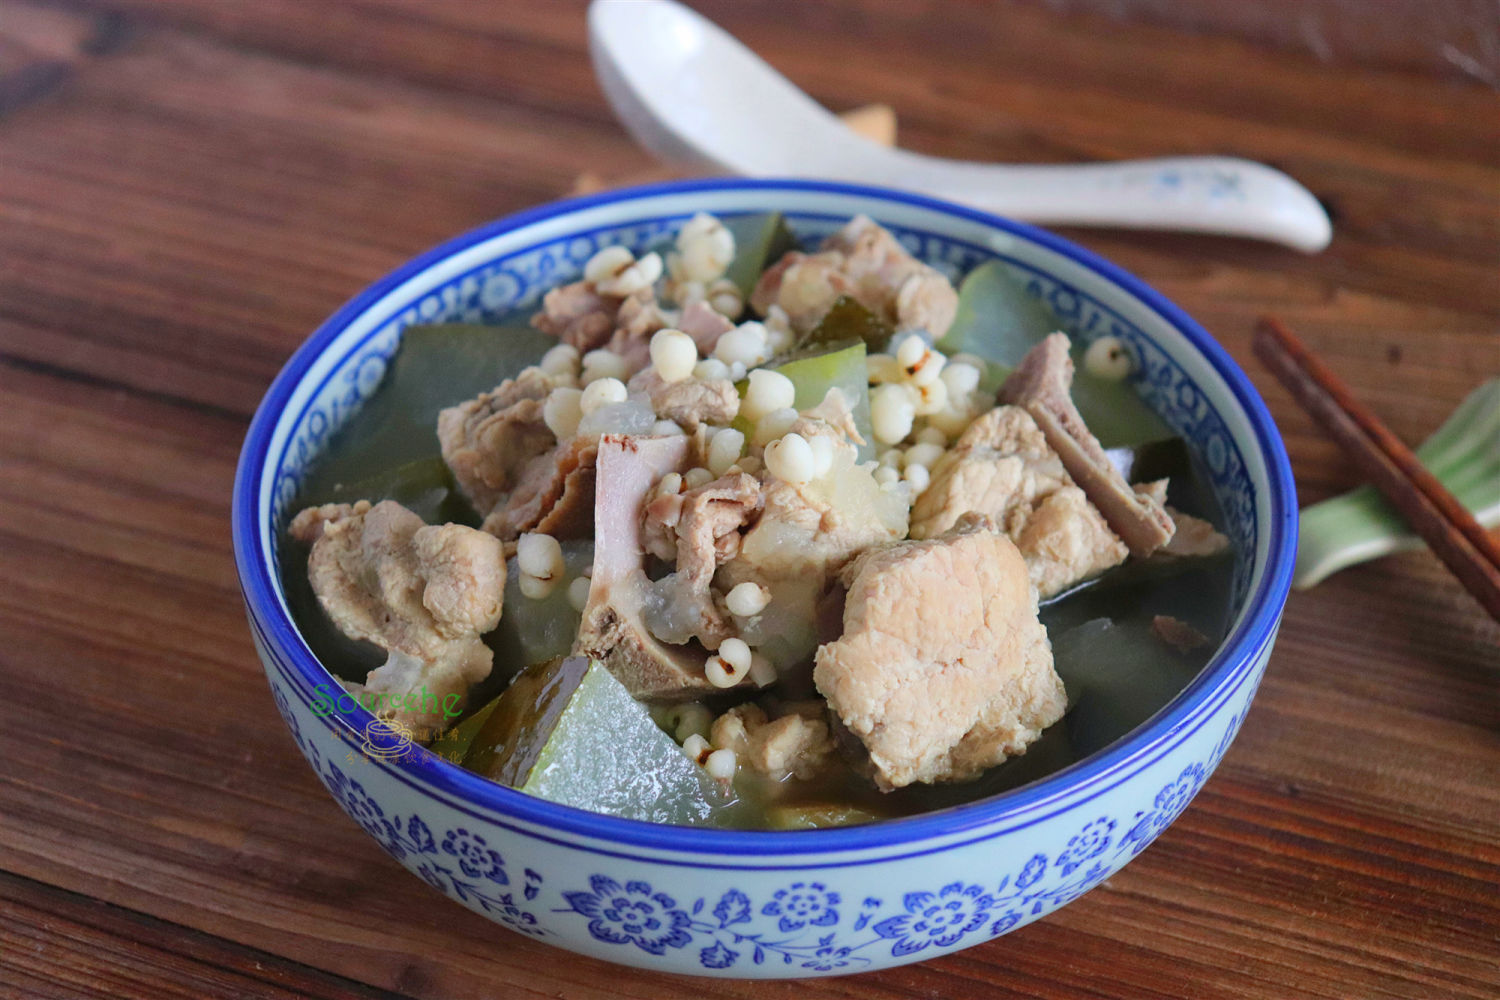 冬瓜薏米排骨汤,冬瓜薏米排骨汤的家常做法 - 美食杰冬瓜薏米排骨汤做法大全